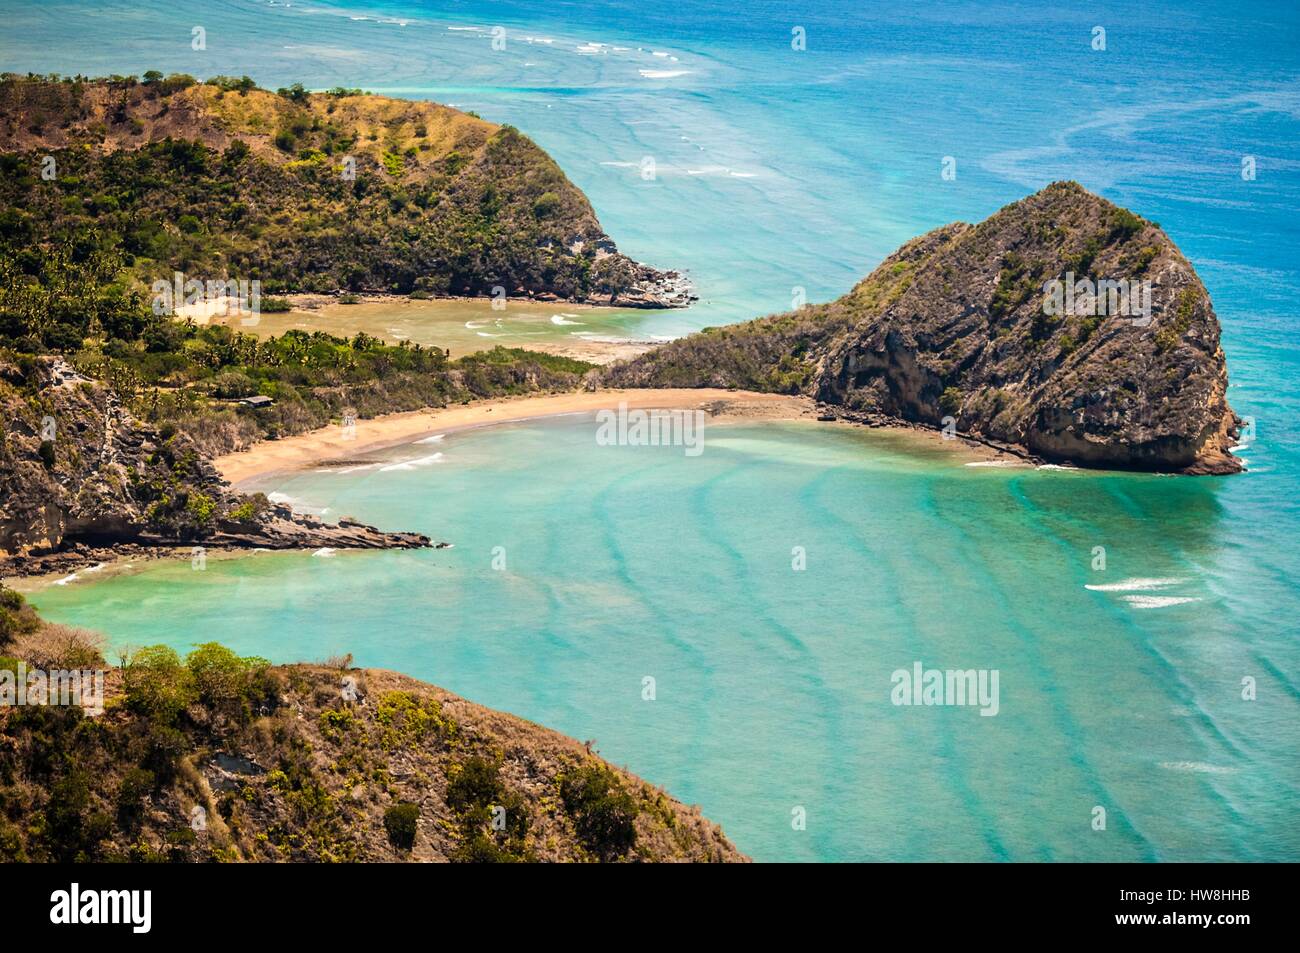 La France, l'île de Mayotte (département français d'outre-mer), Petite Terre, Labattoir, les plages de Moya (vue aérienne) Banque D'Images